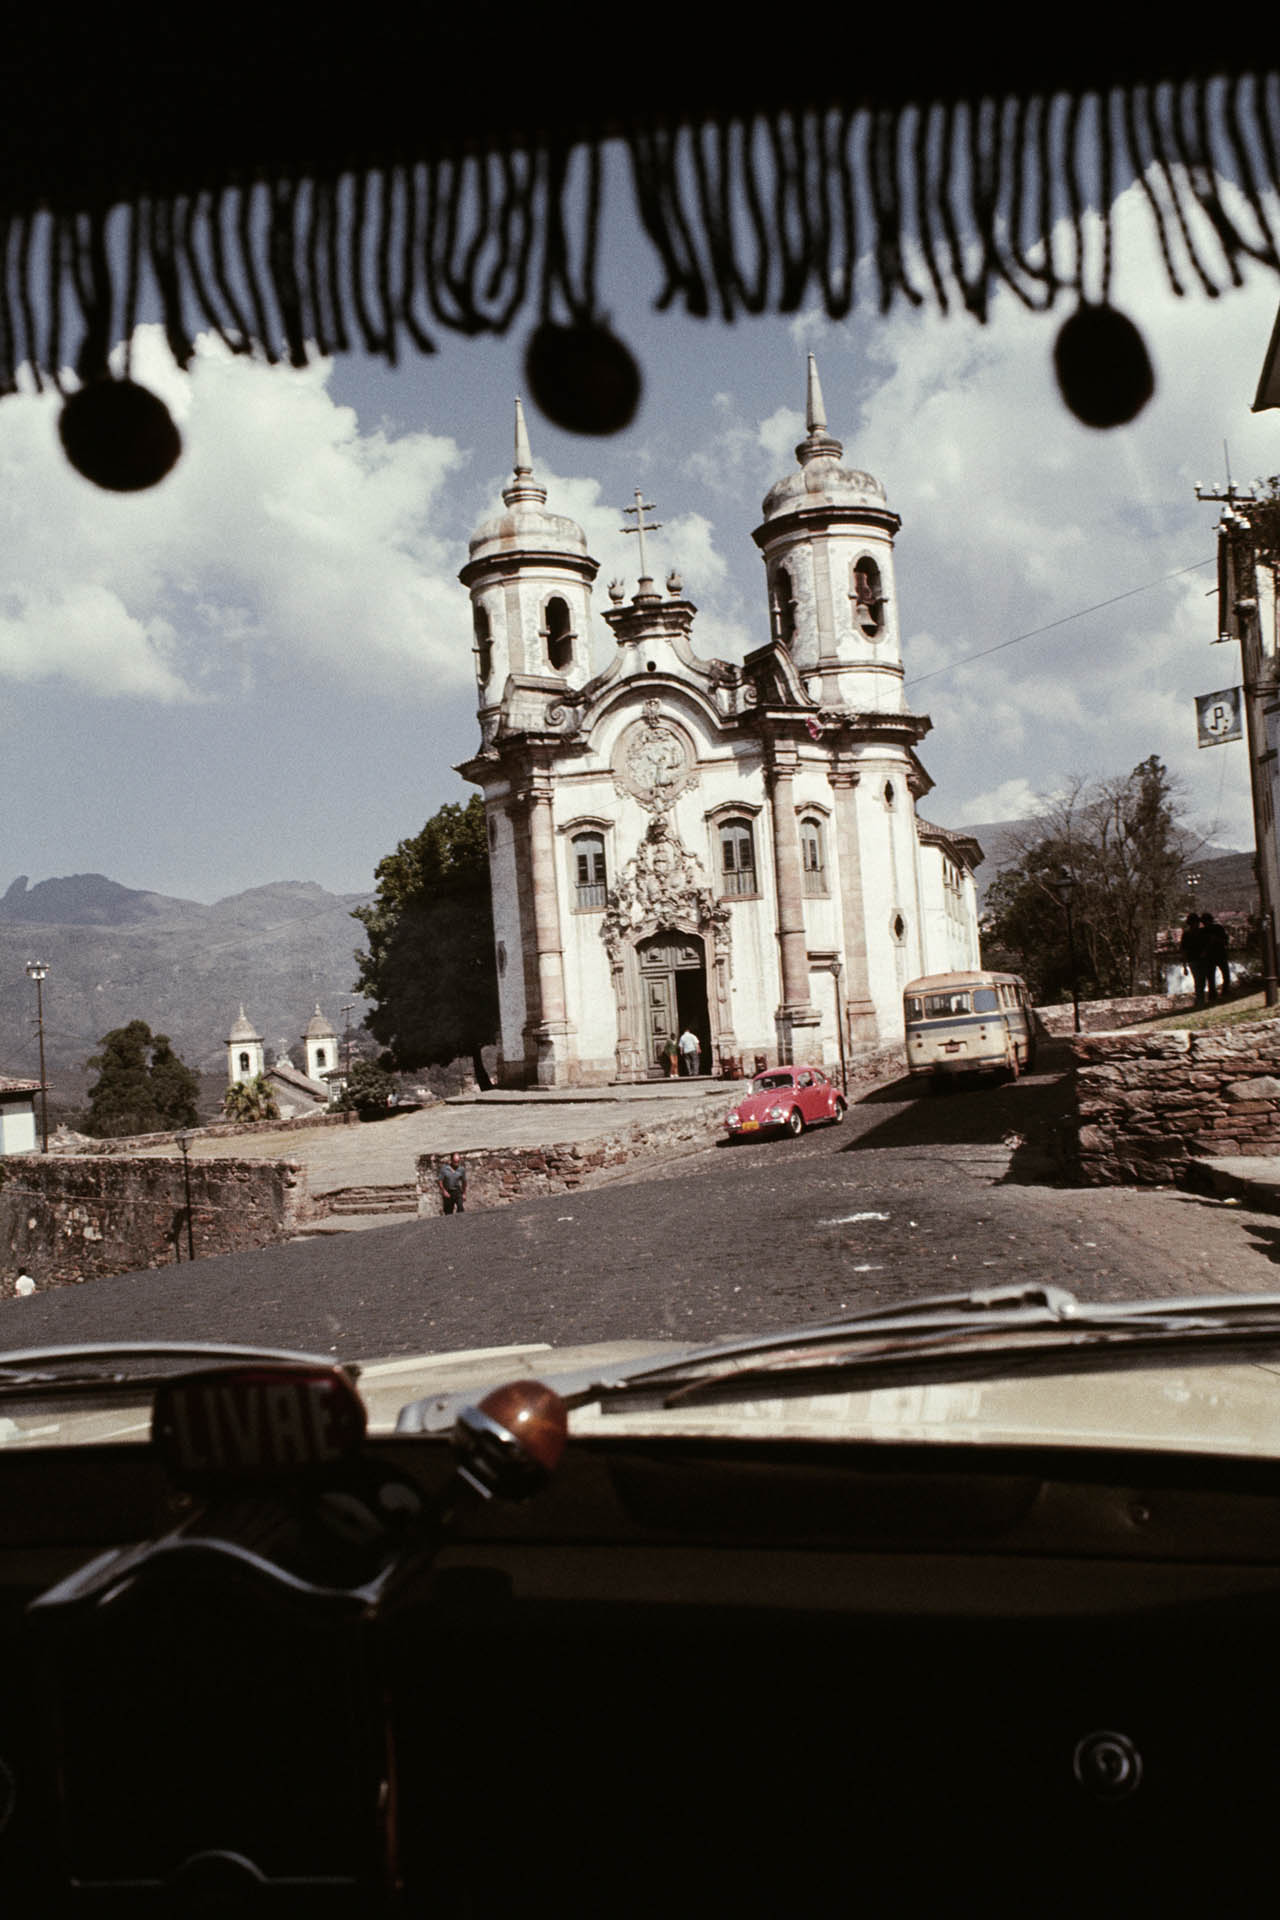 Igreja de São Francisco de Assis, Ouro Preto, MG, 1971. Foto de Jorge Bodanzky. Acervo Jorge Bodanzky / IMS